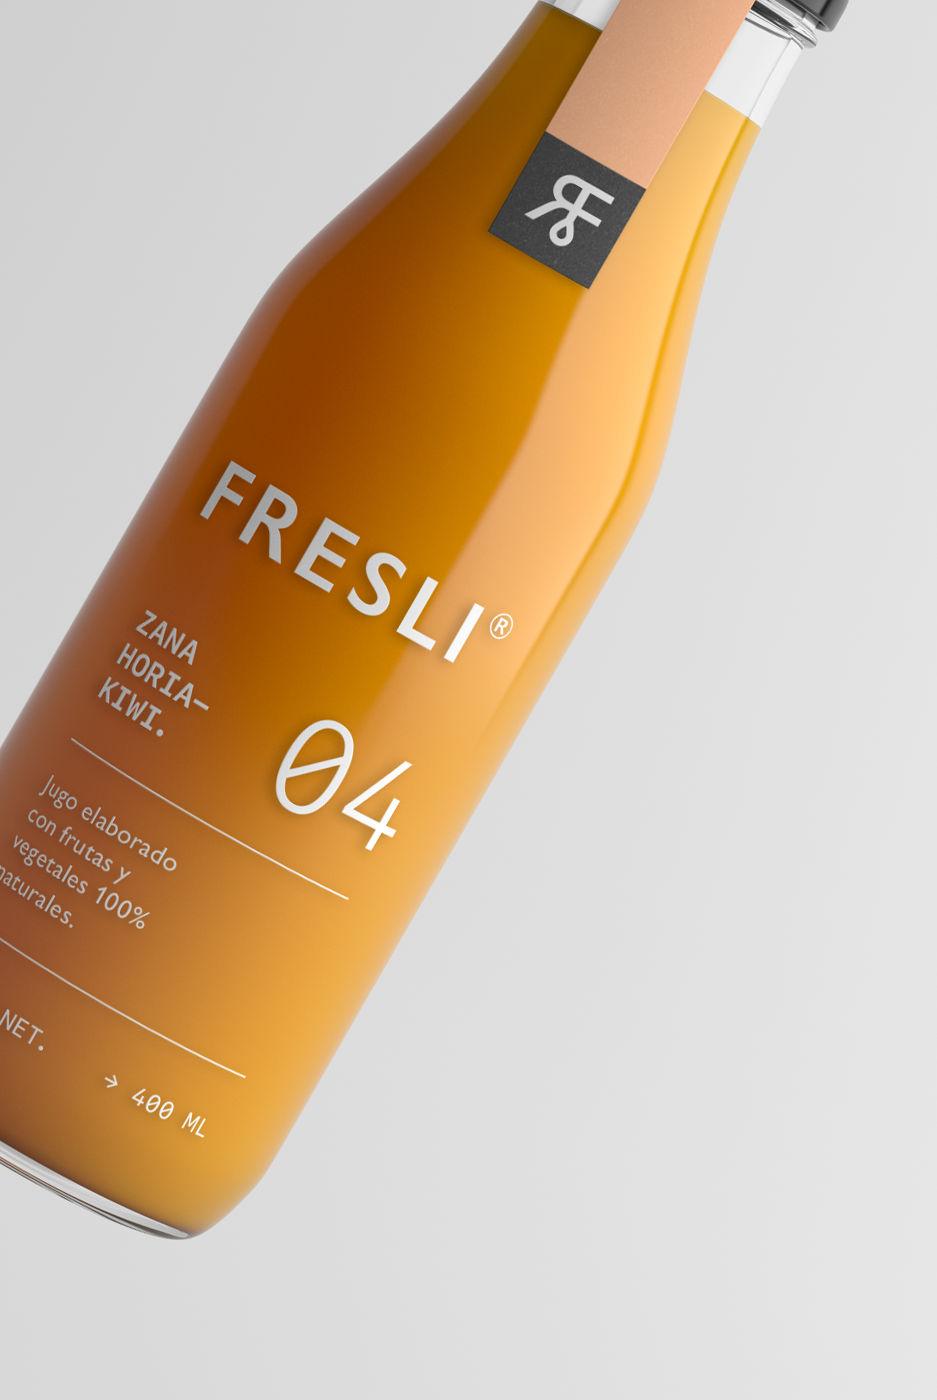 Fresli果汁品牌包装设计